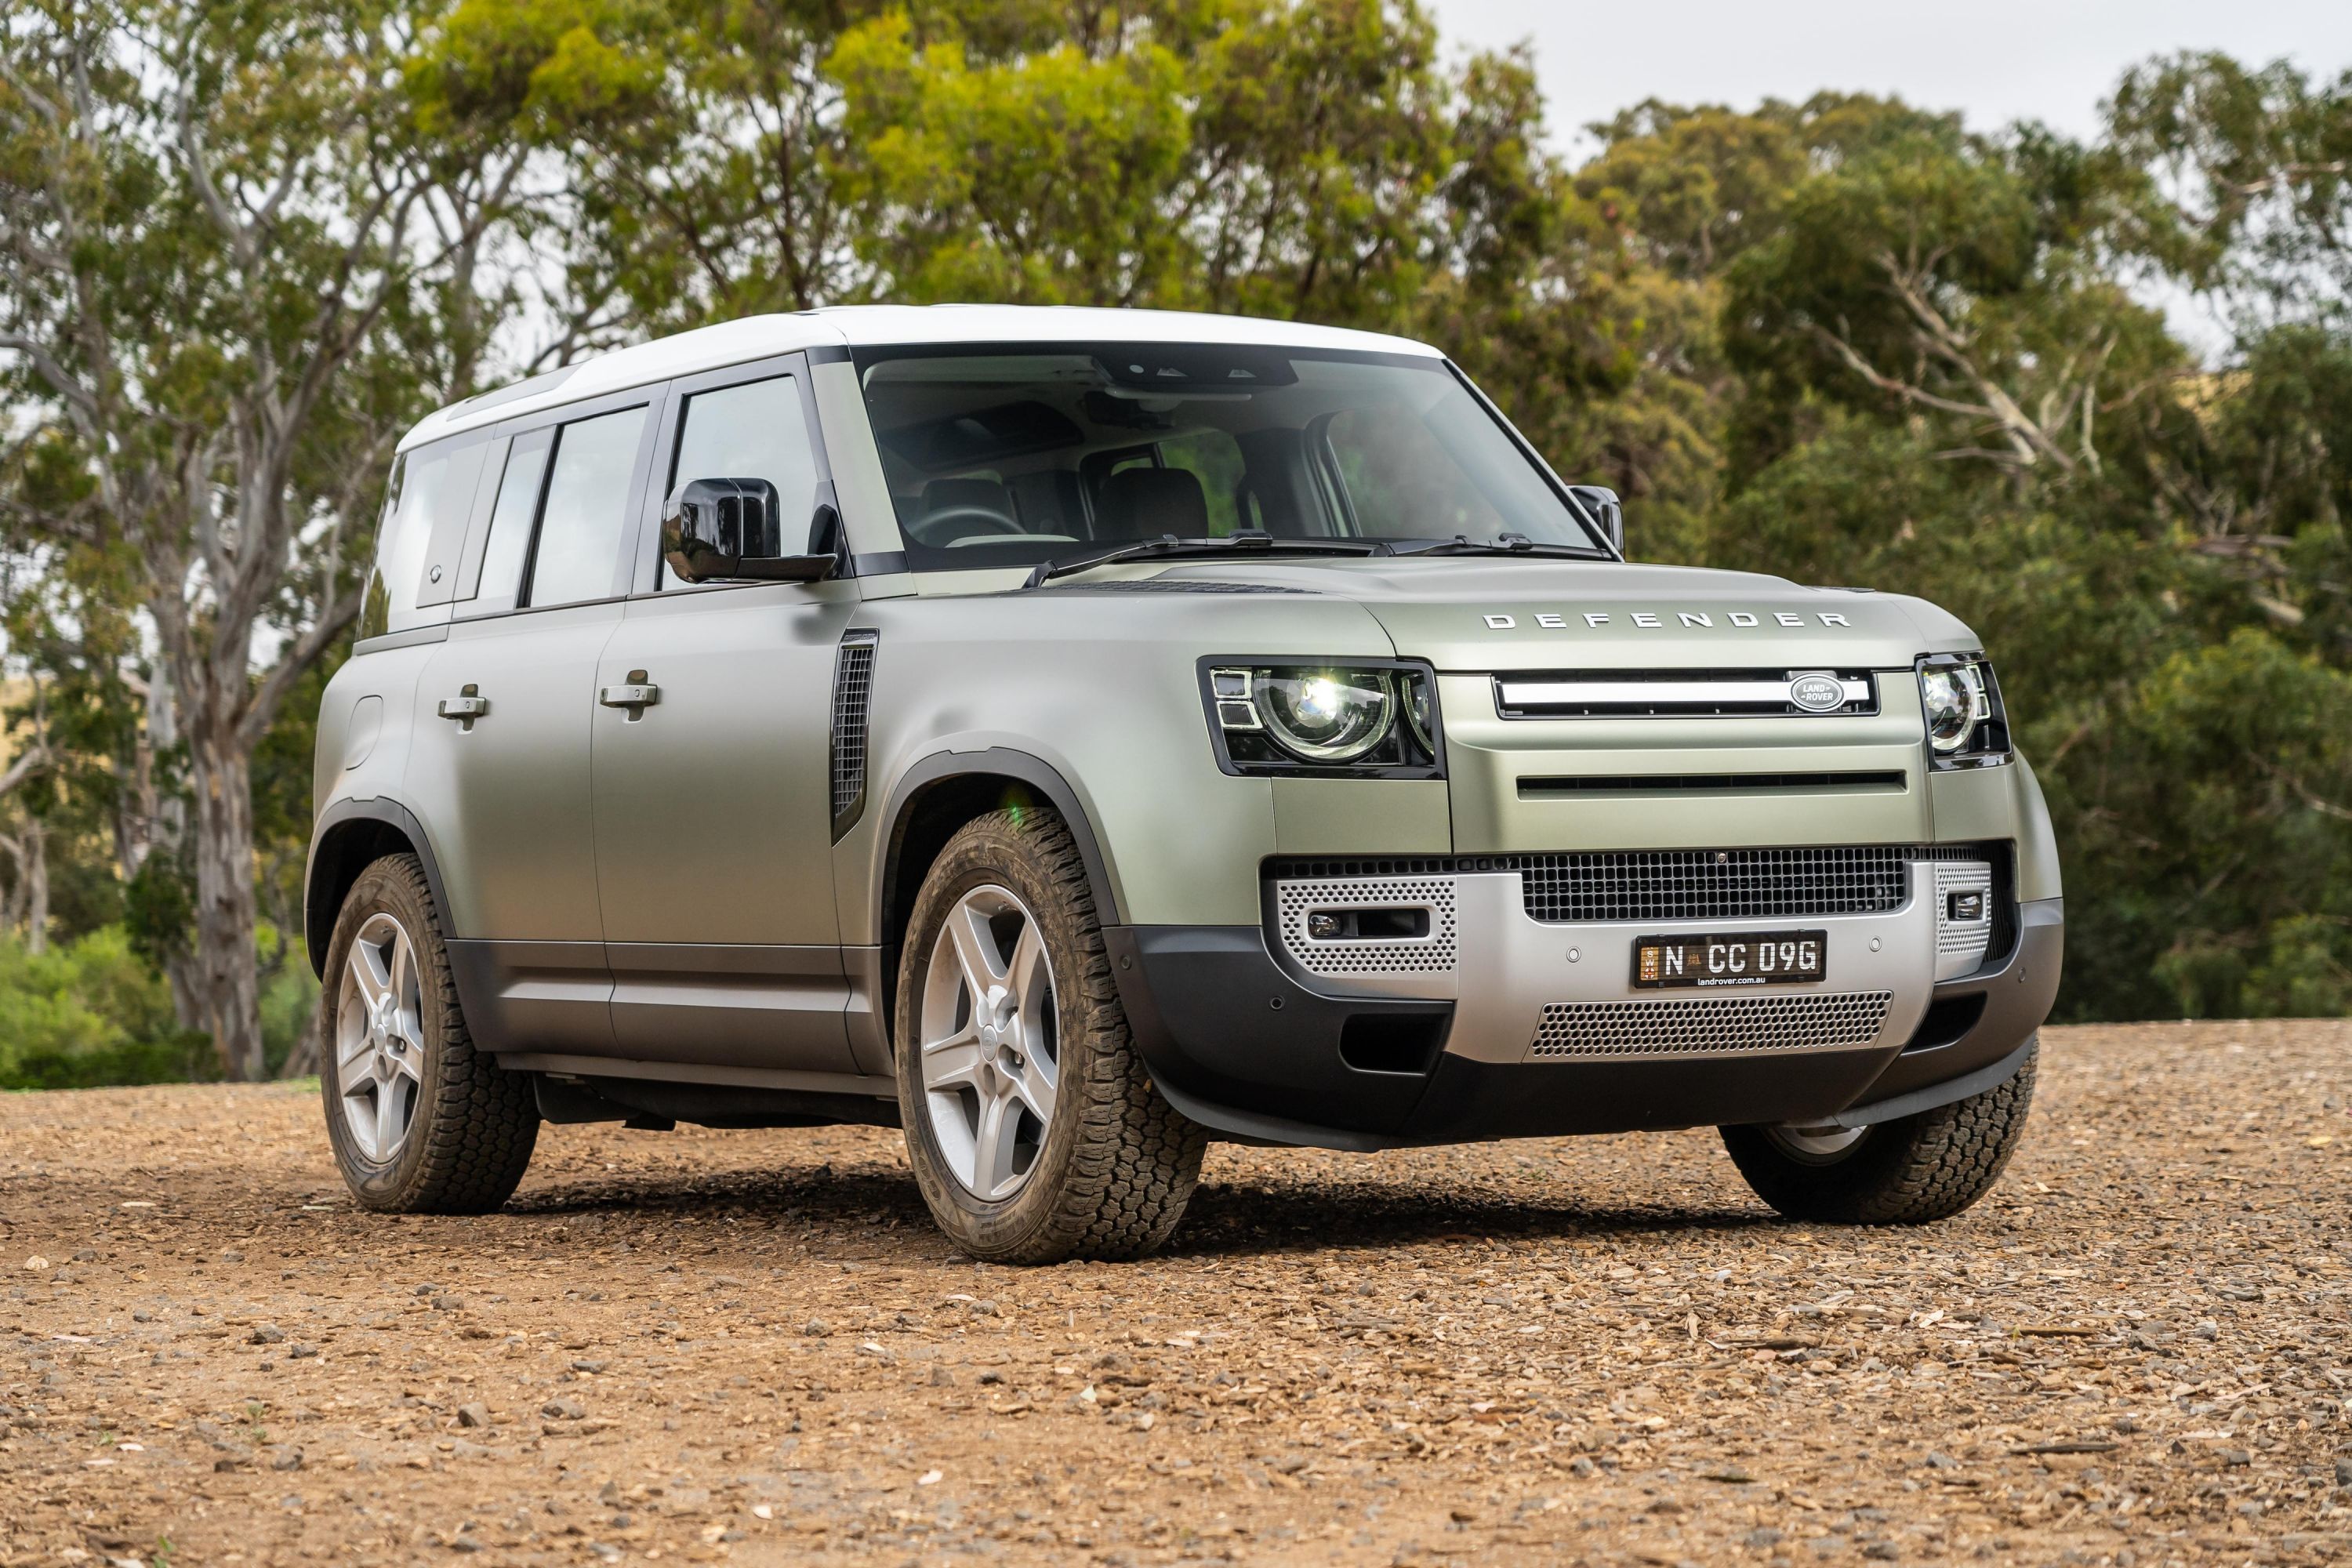 Land Rover planning upmarket Range Rover-based Defender - report